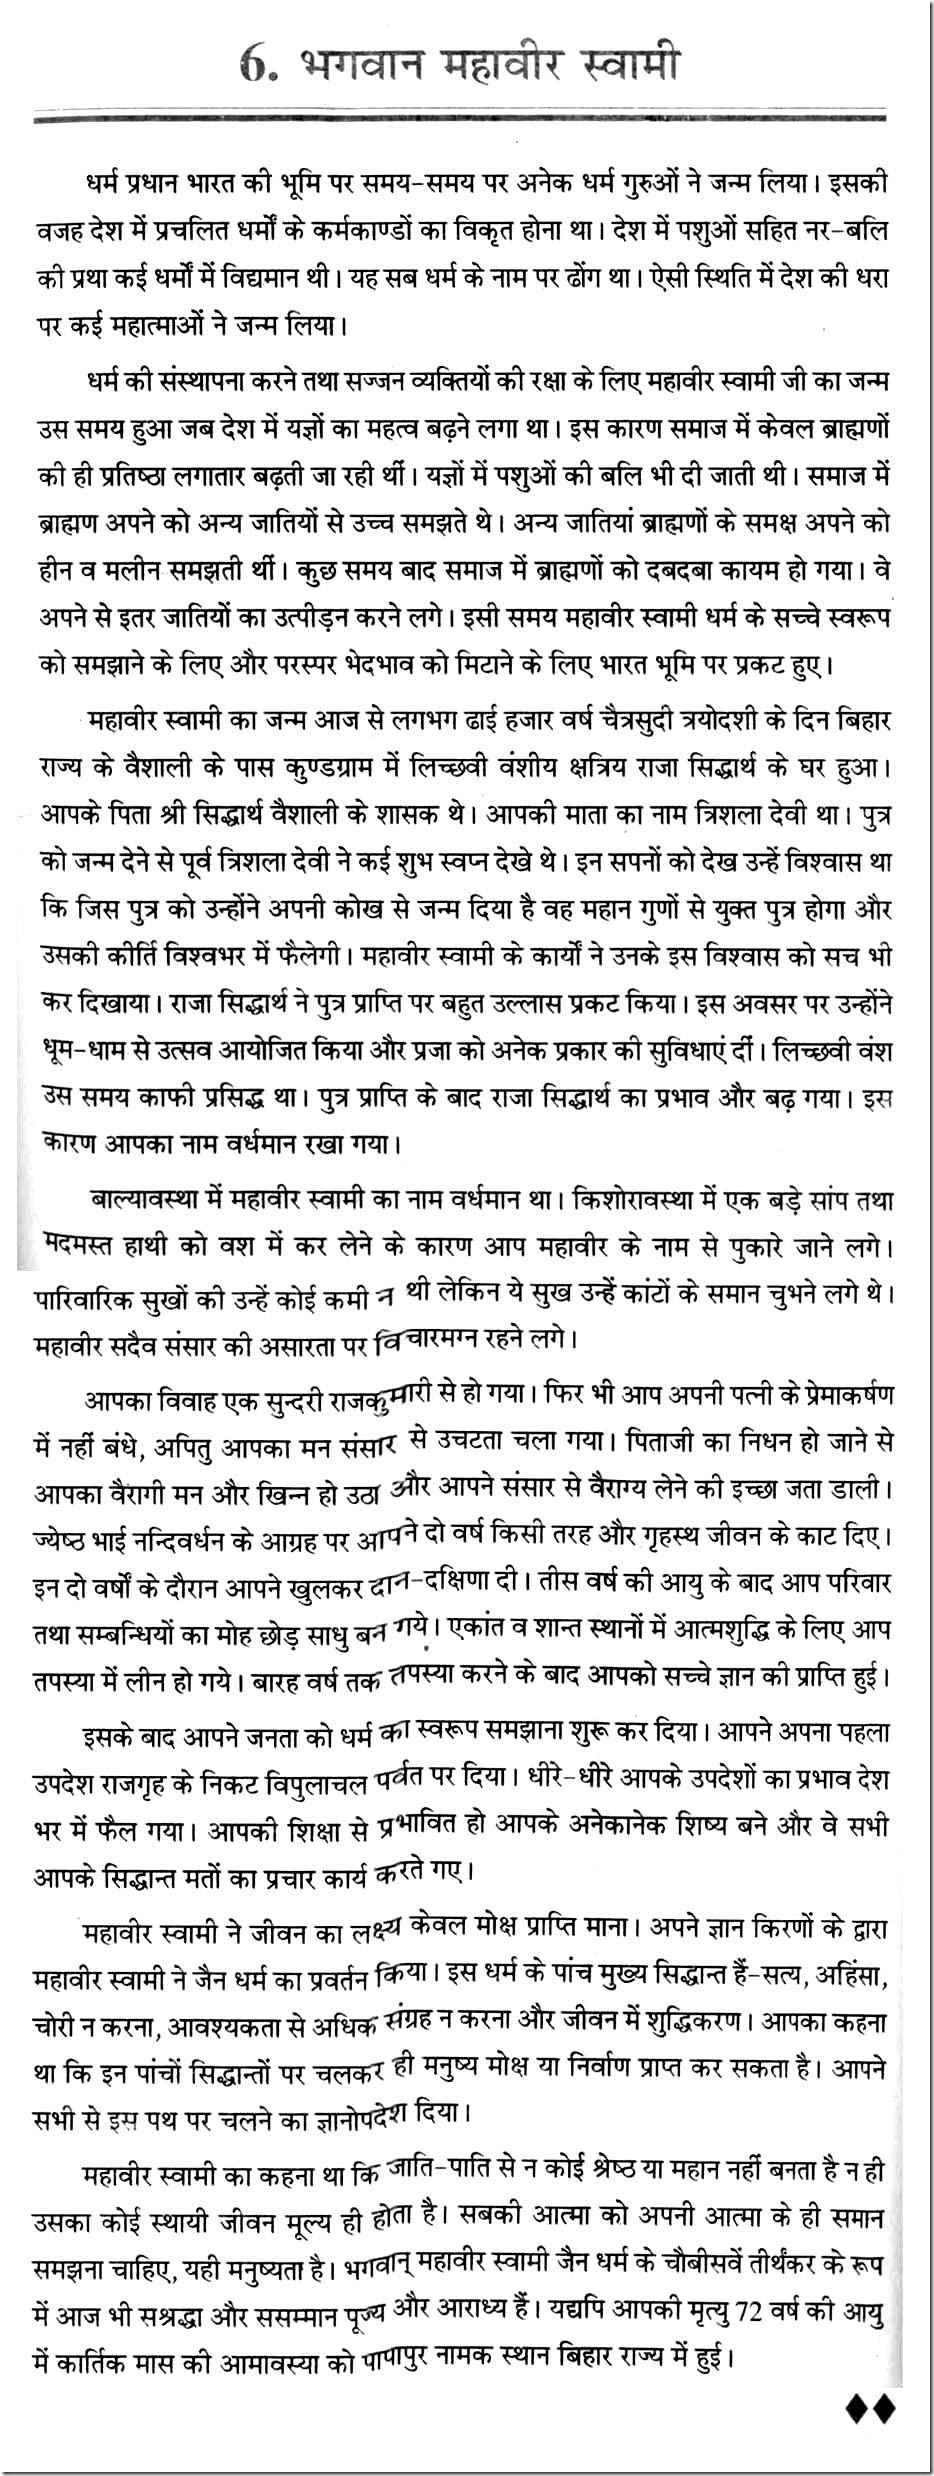 bhagwan mahavir history in hindi